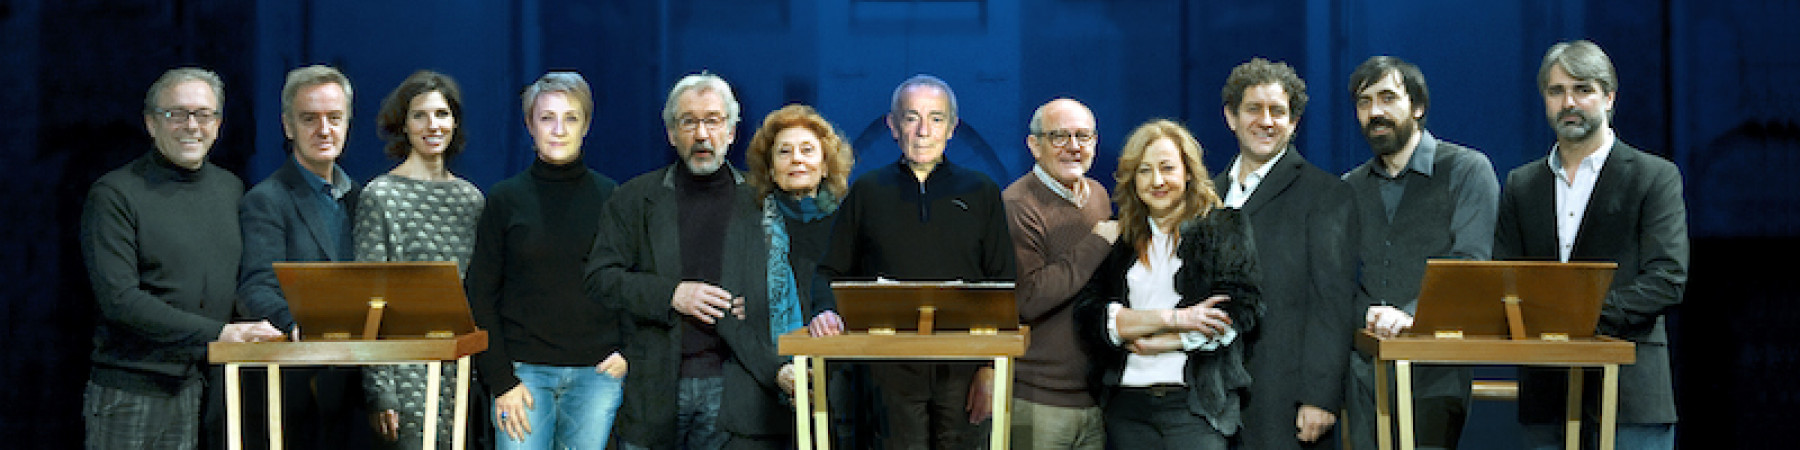 En «Cómicos de la lengua» participarán doce intérpretes, dirigidos por José Luis Gómez.